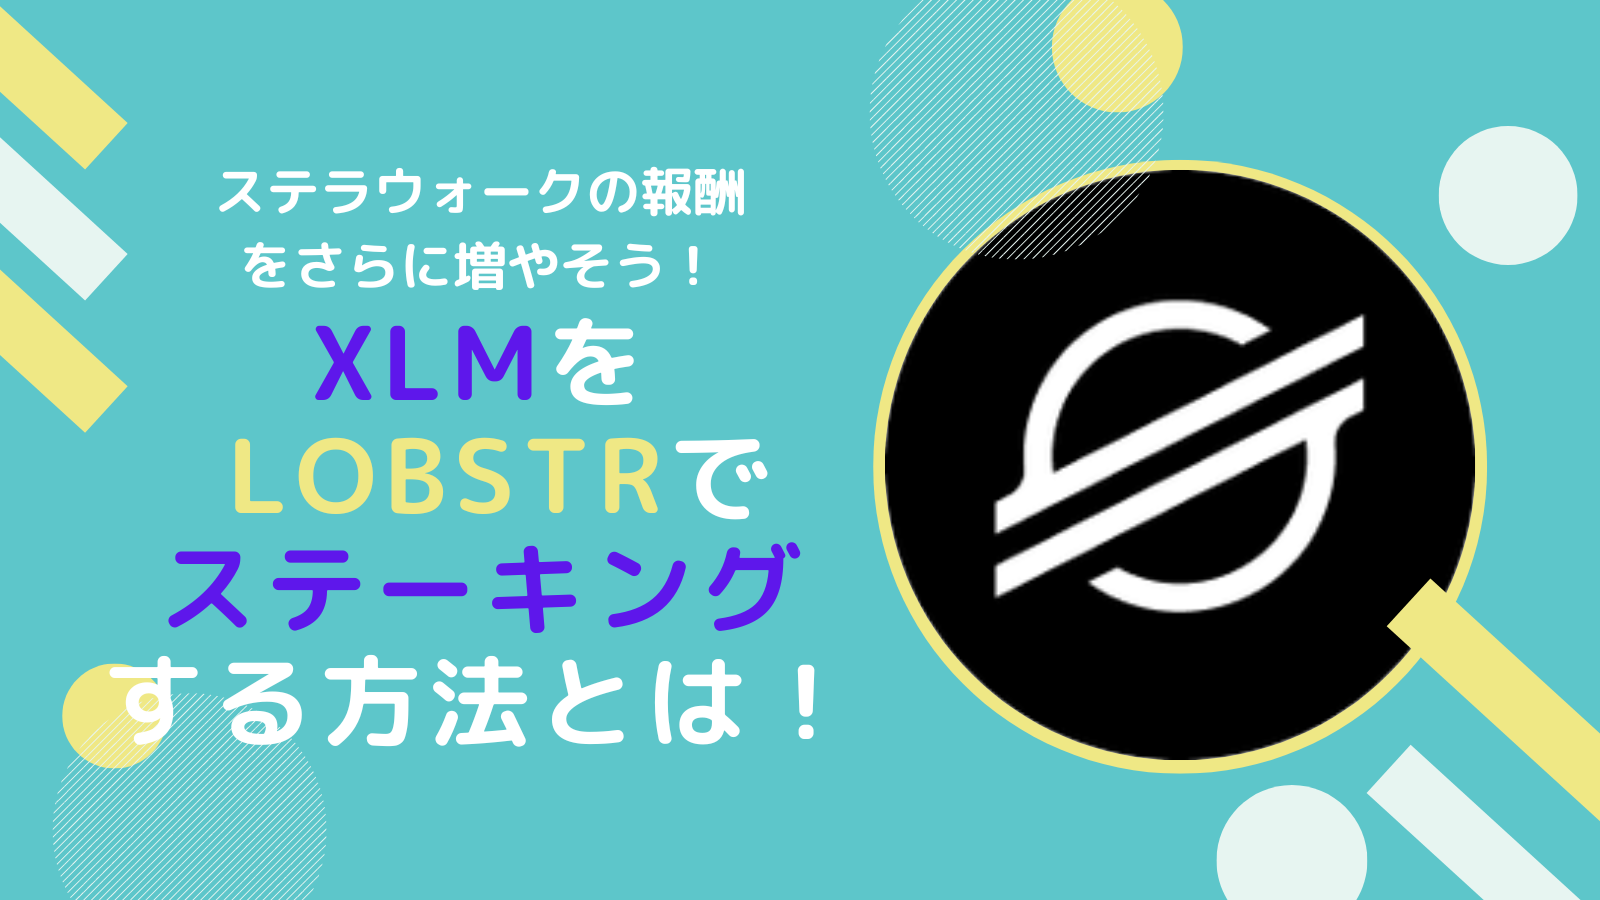 XLM(ステラ)を年利4%で運用する方法【LOBSTR】